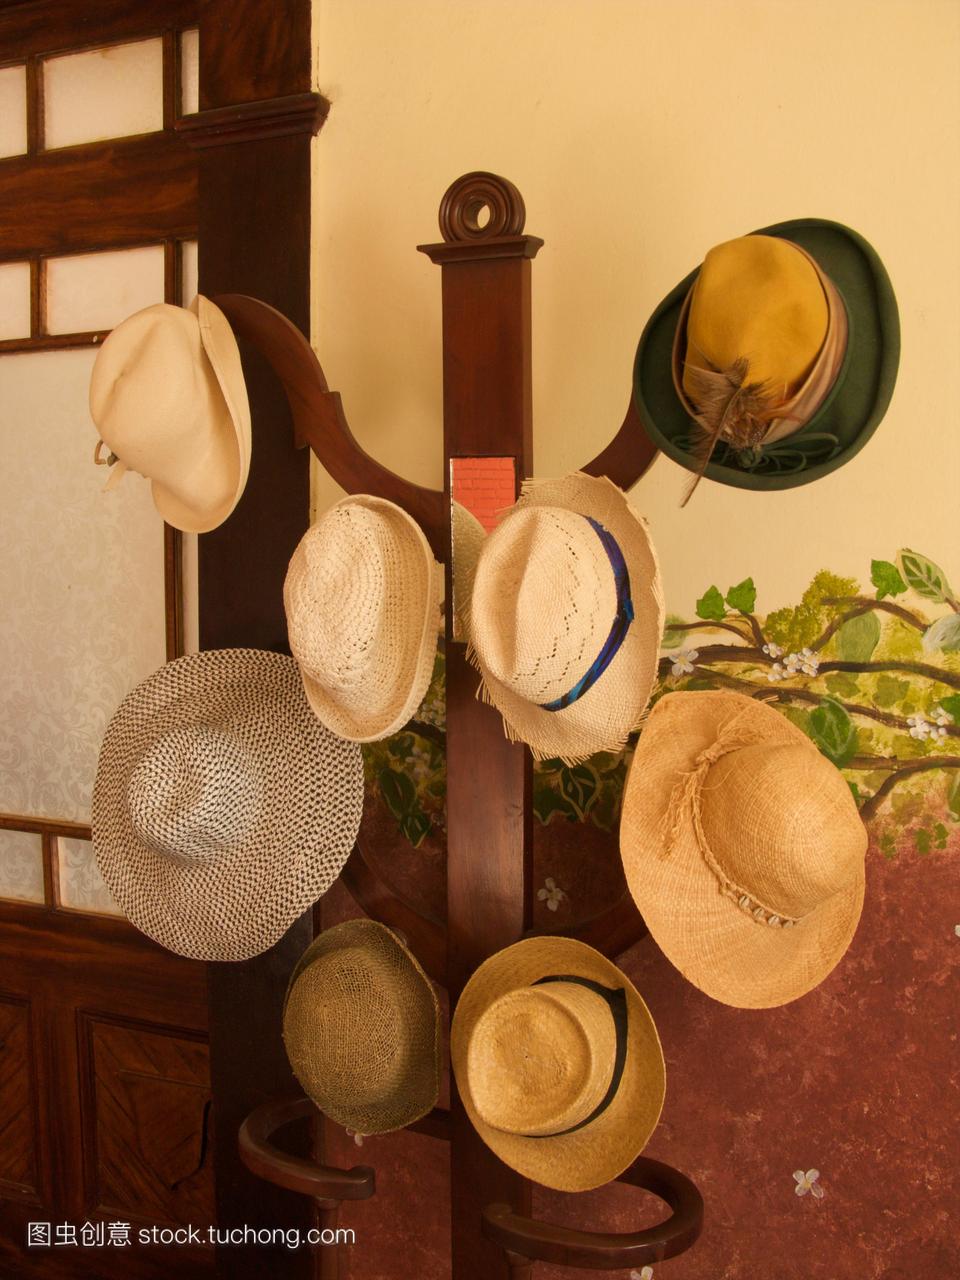 在鬼屋旅馆的大鼠架子上挂着各种各样的帽子。